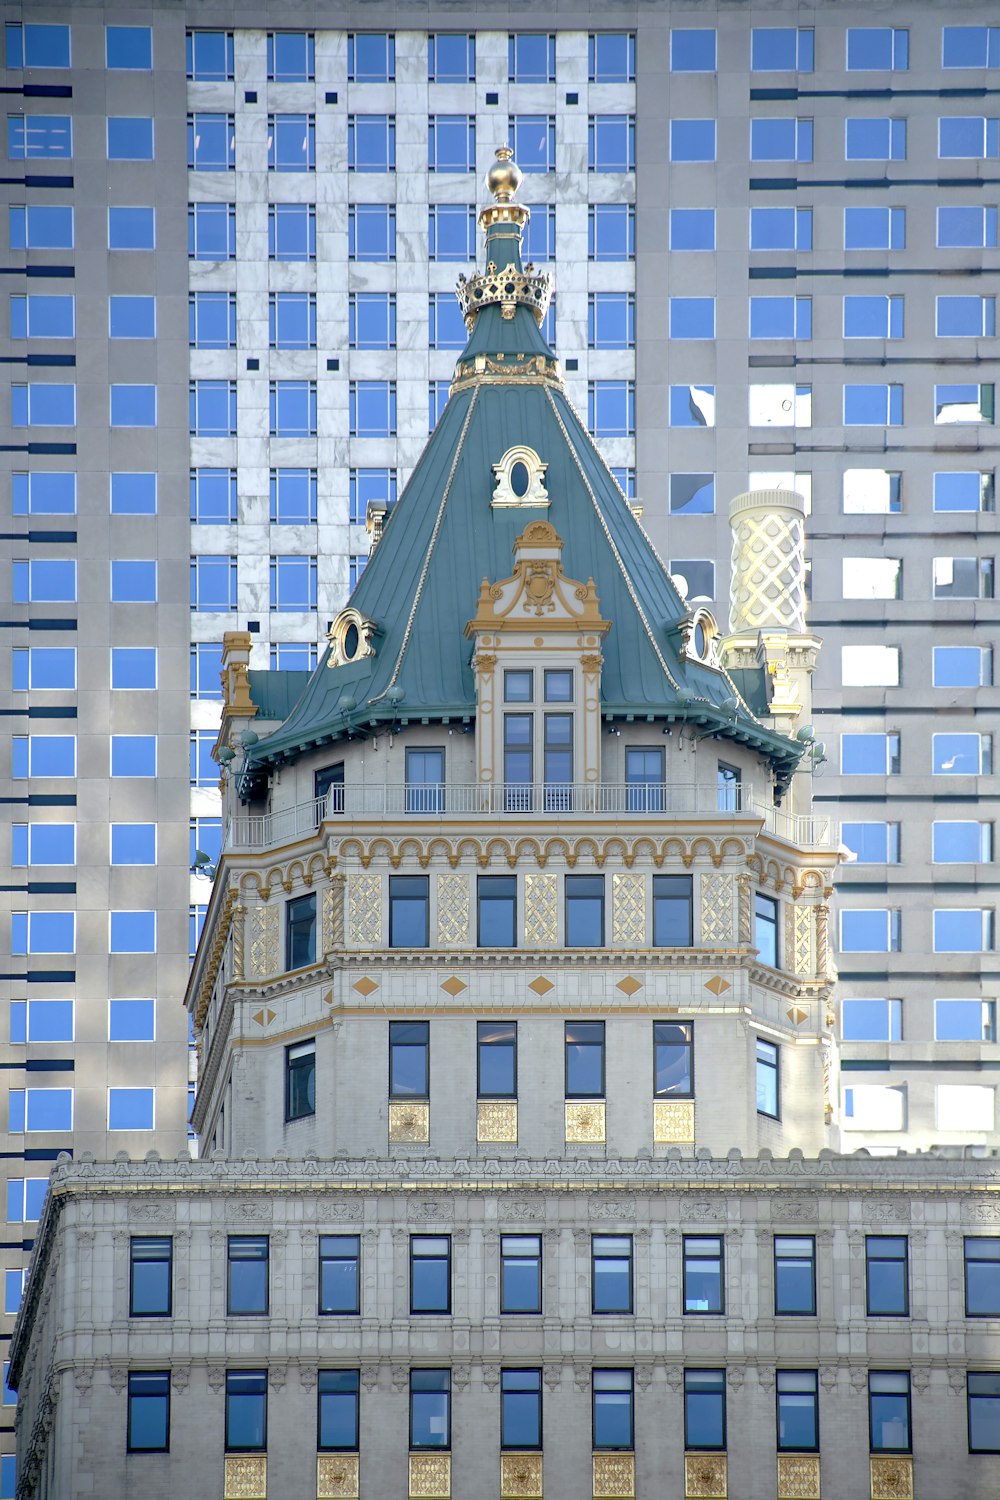 Ein hohes Gebäude mit einer Uhr auf der Spitze